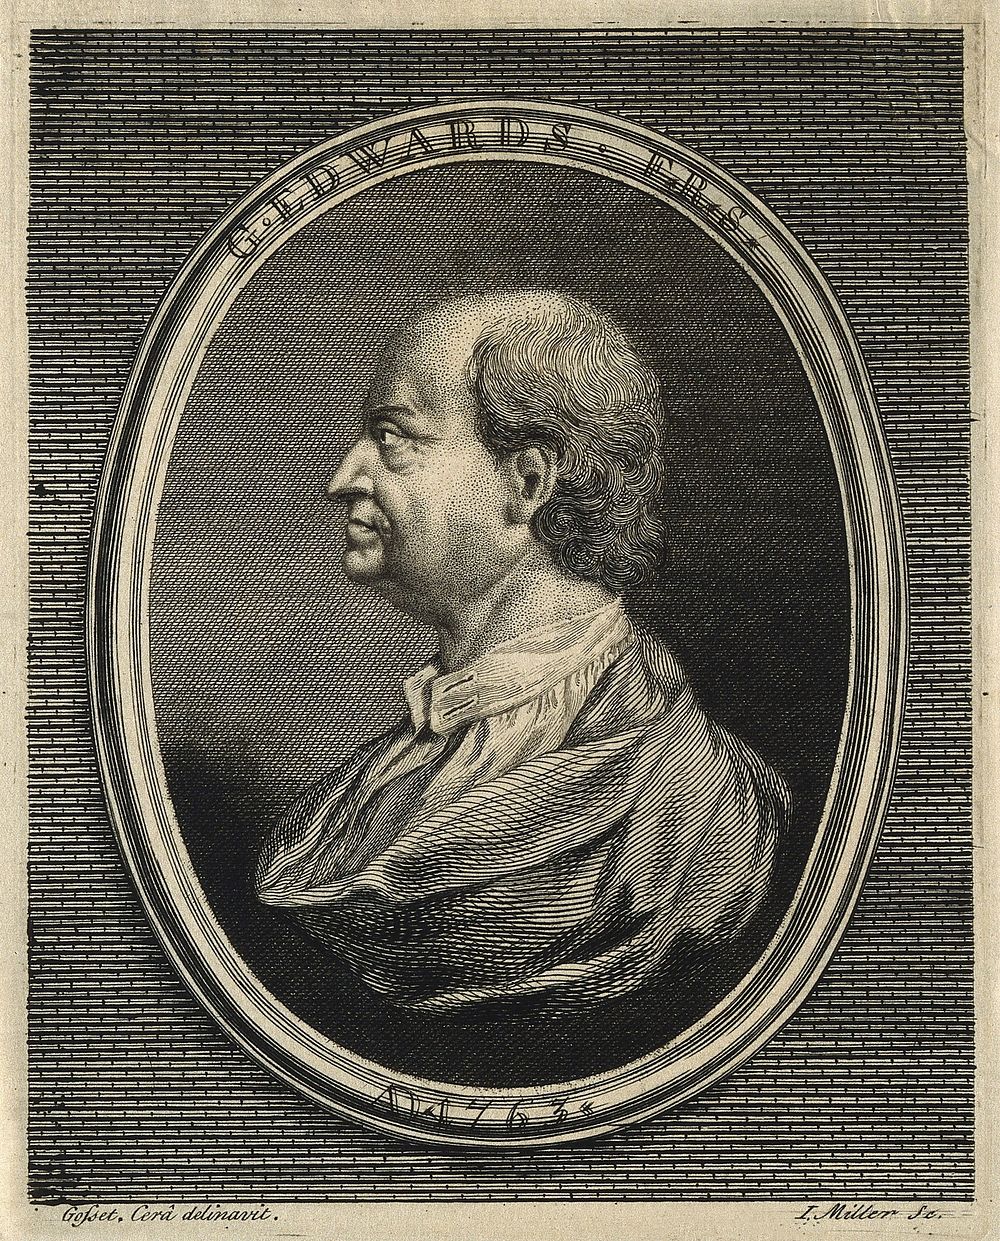 George Edwards. Line engraving by J. Miller, 1763, after I. Gosset.